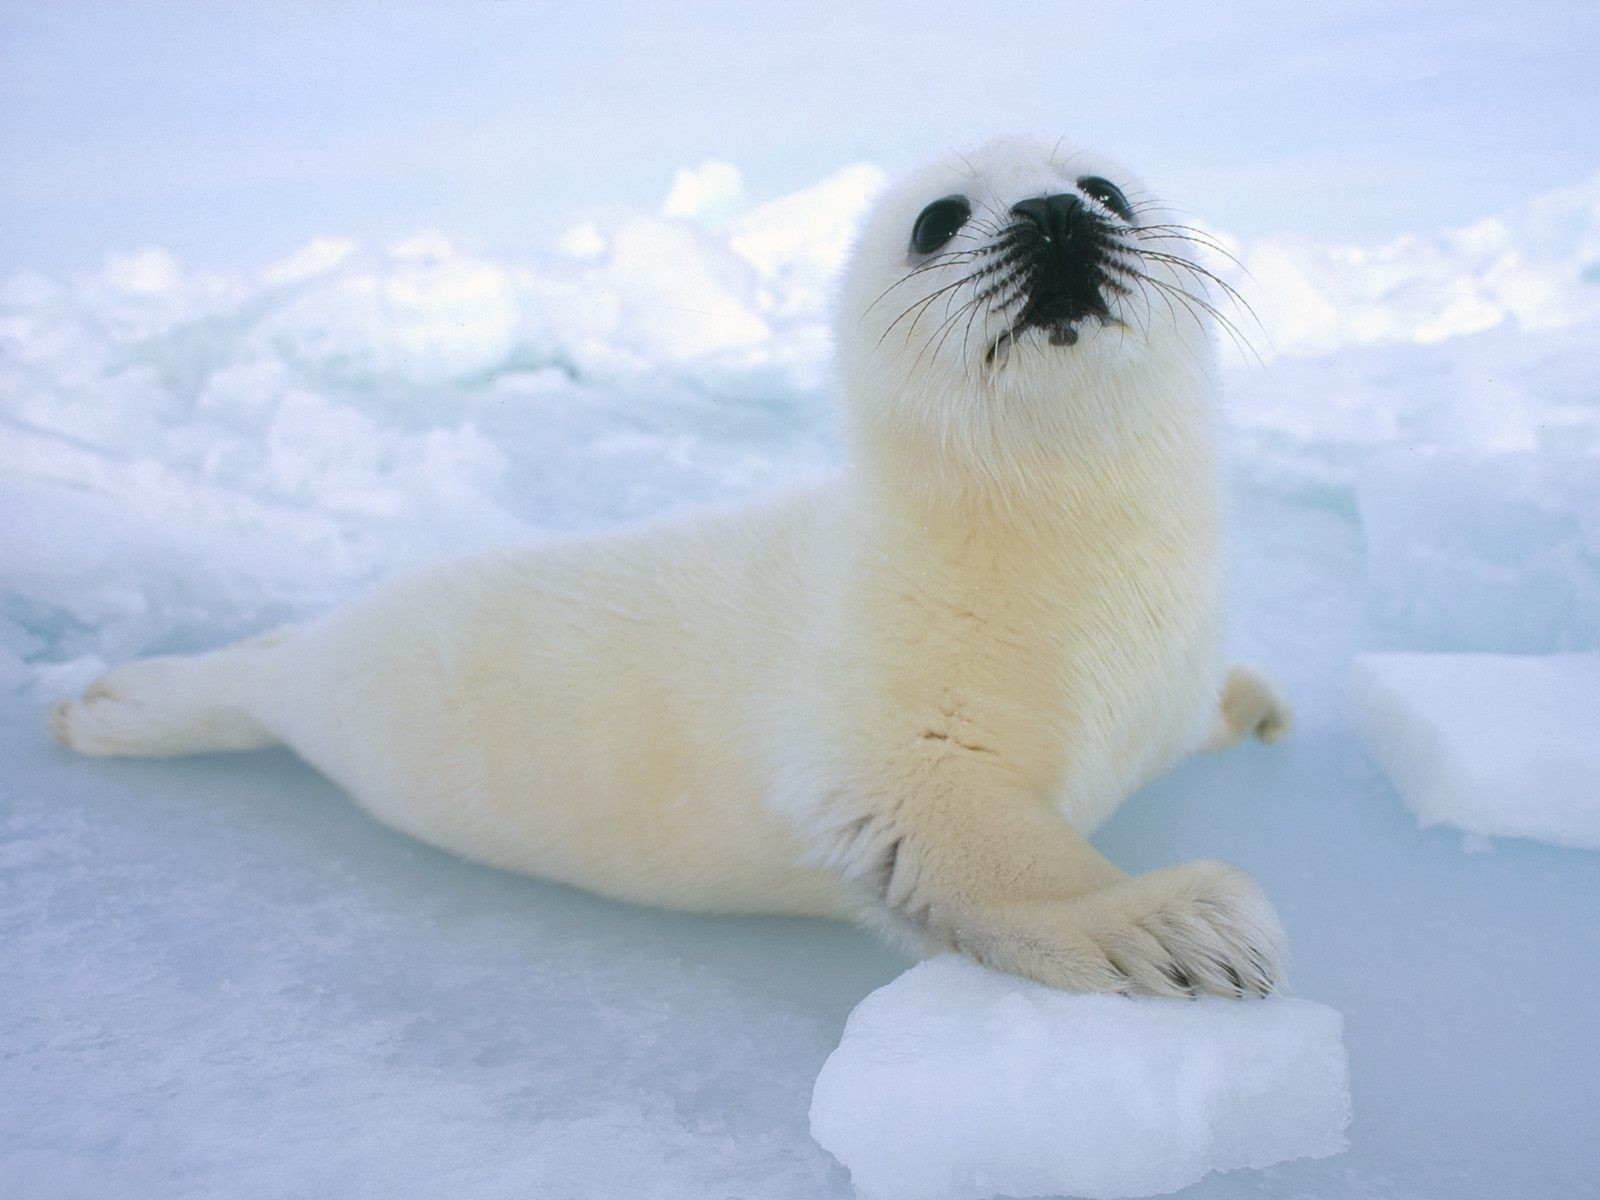 животные снег морозный зима млекопитающее лед холодная природа на открытом воздухе дикой природы дневной свет полярный милые воды один животное океан печать